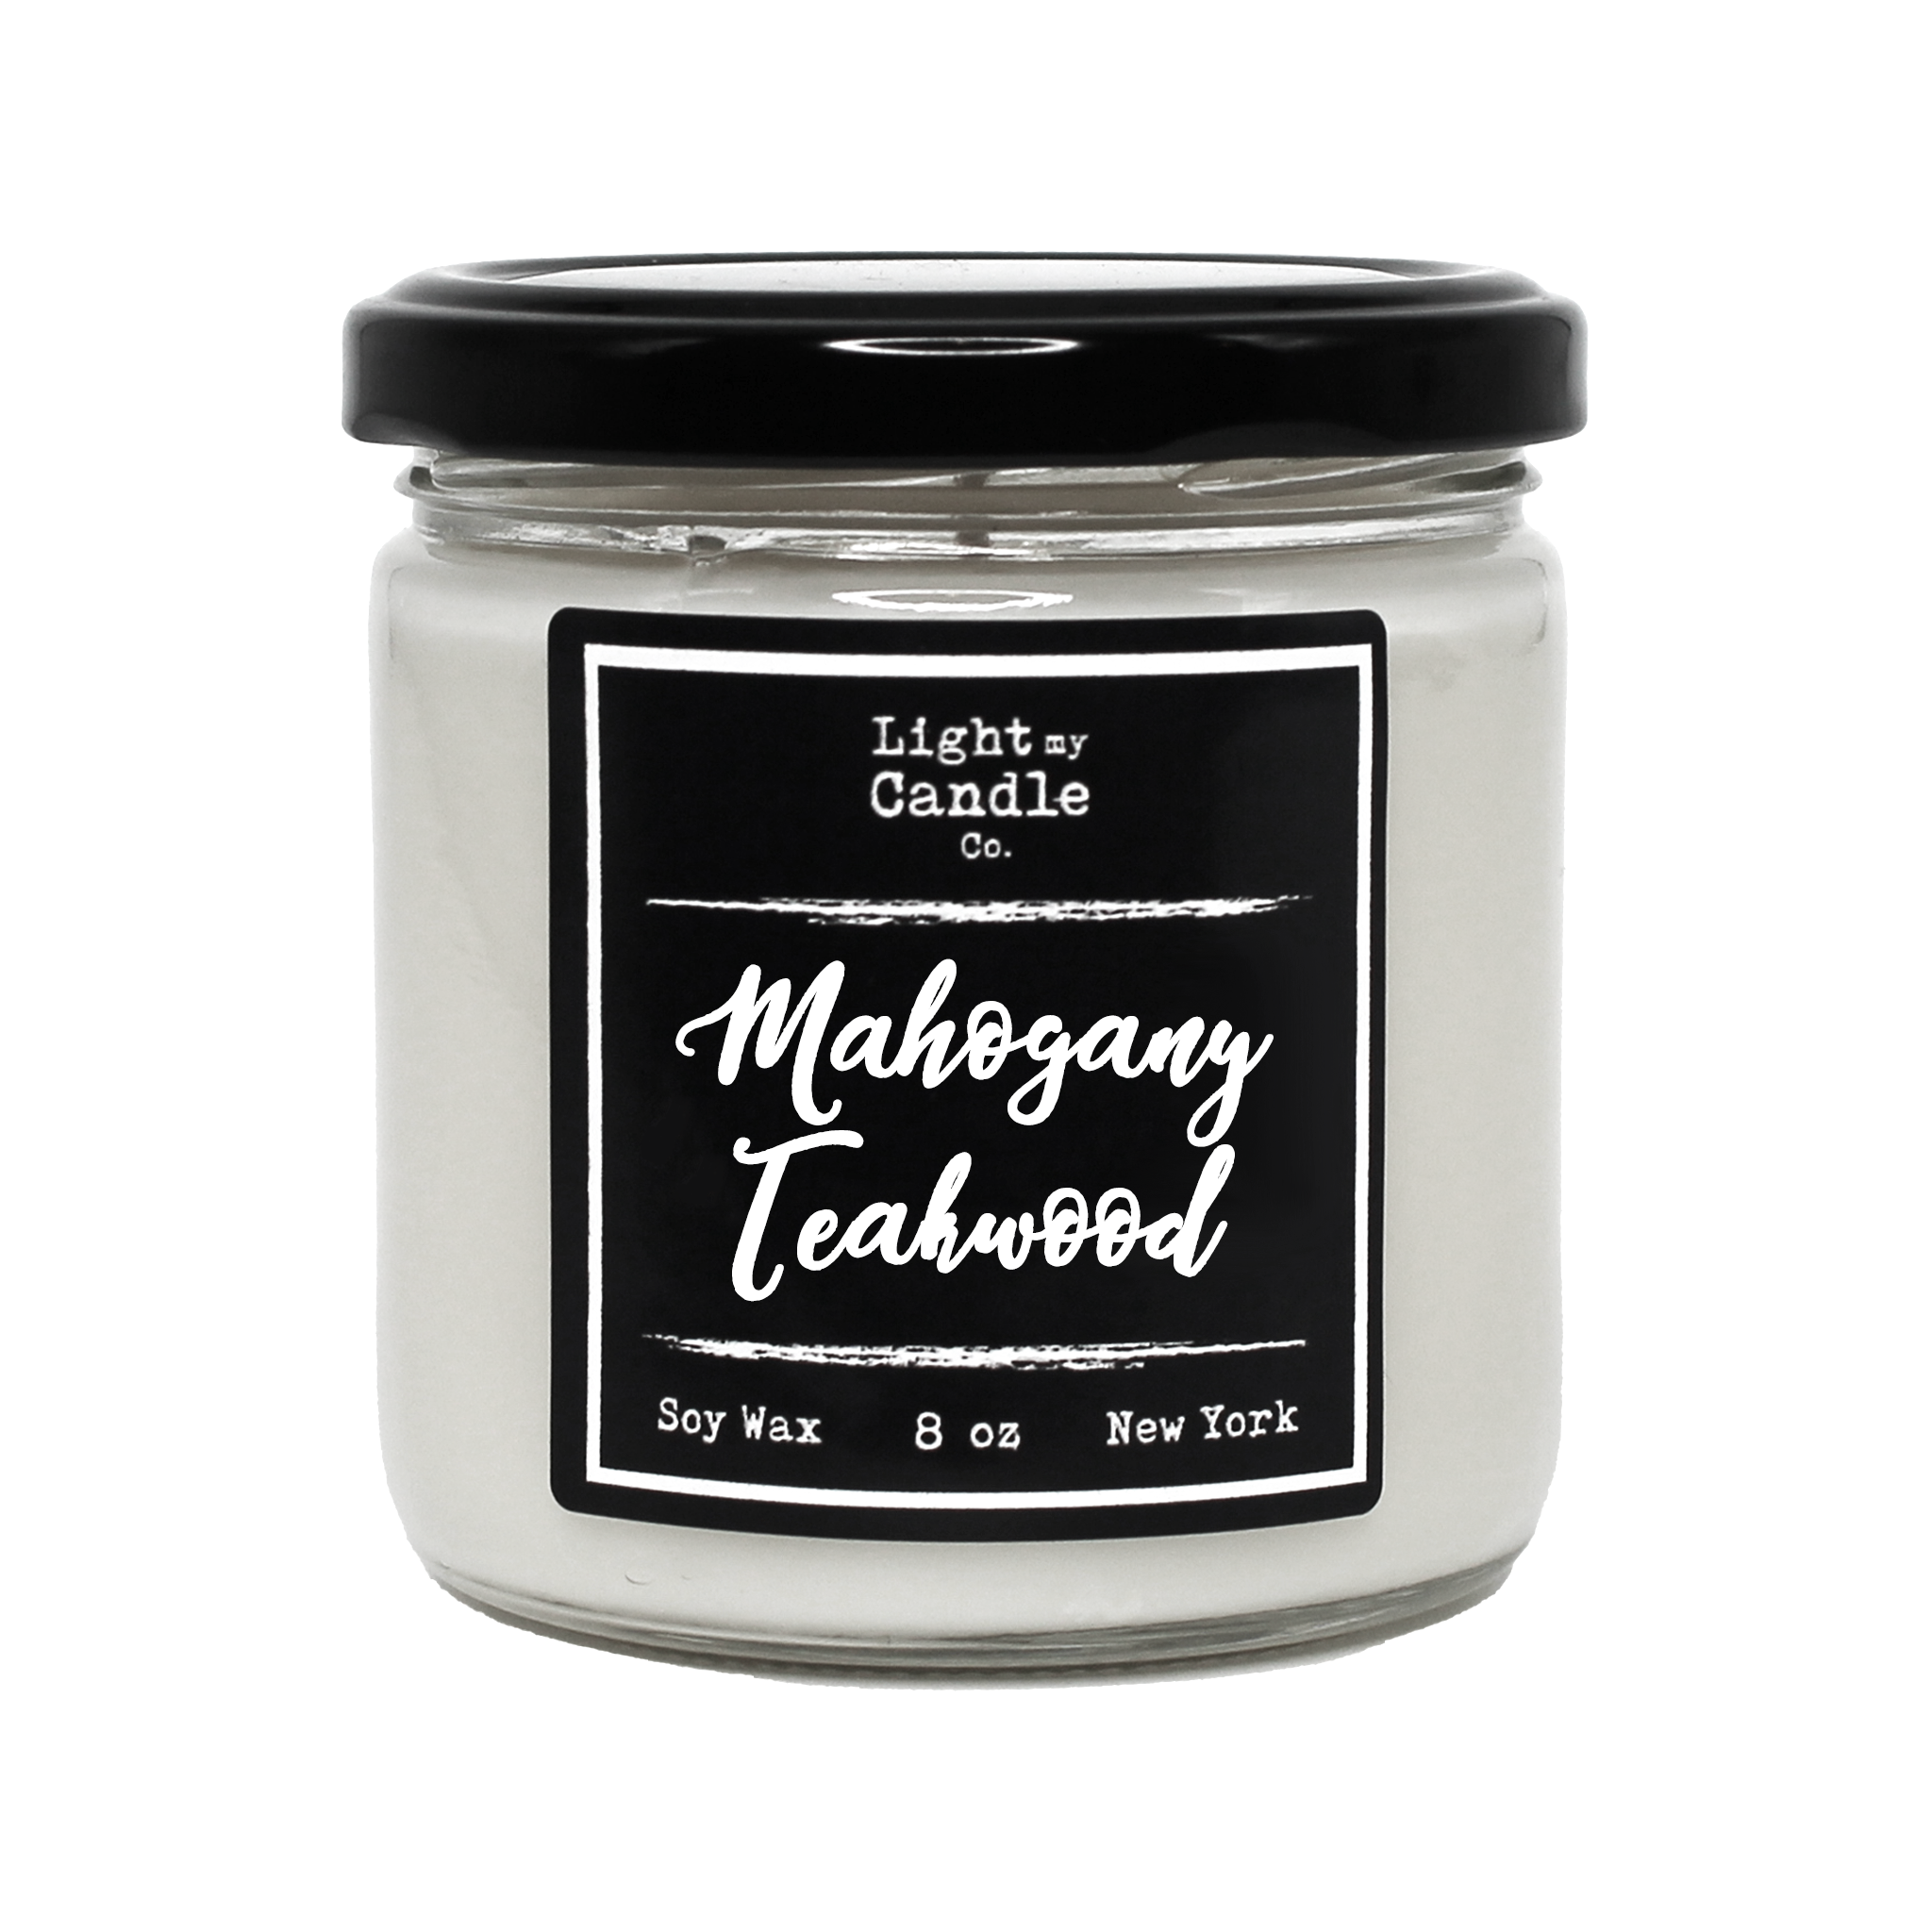 Mahogany Teakwood – Lebanon Candle Company